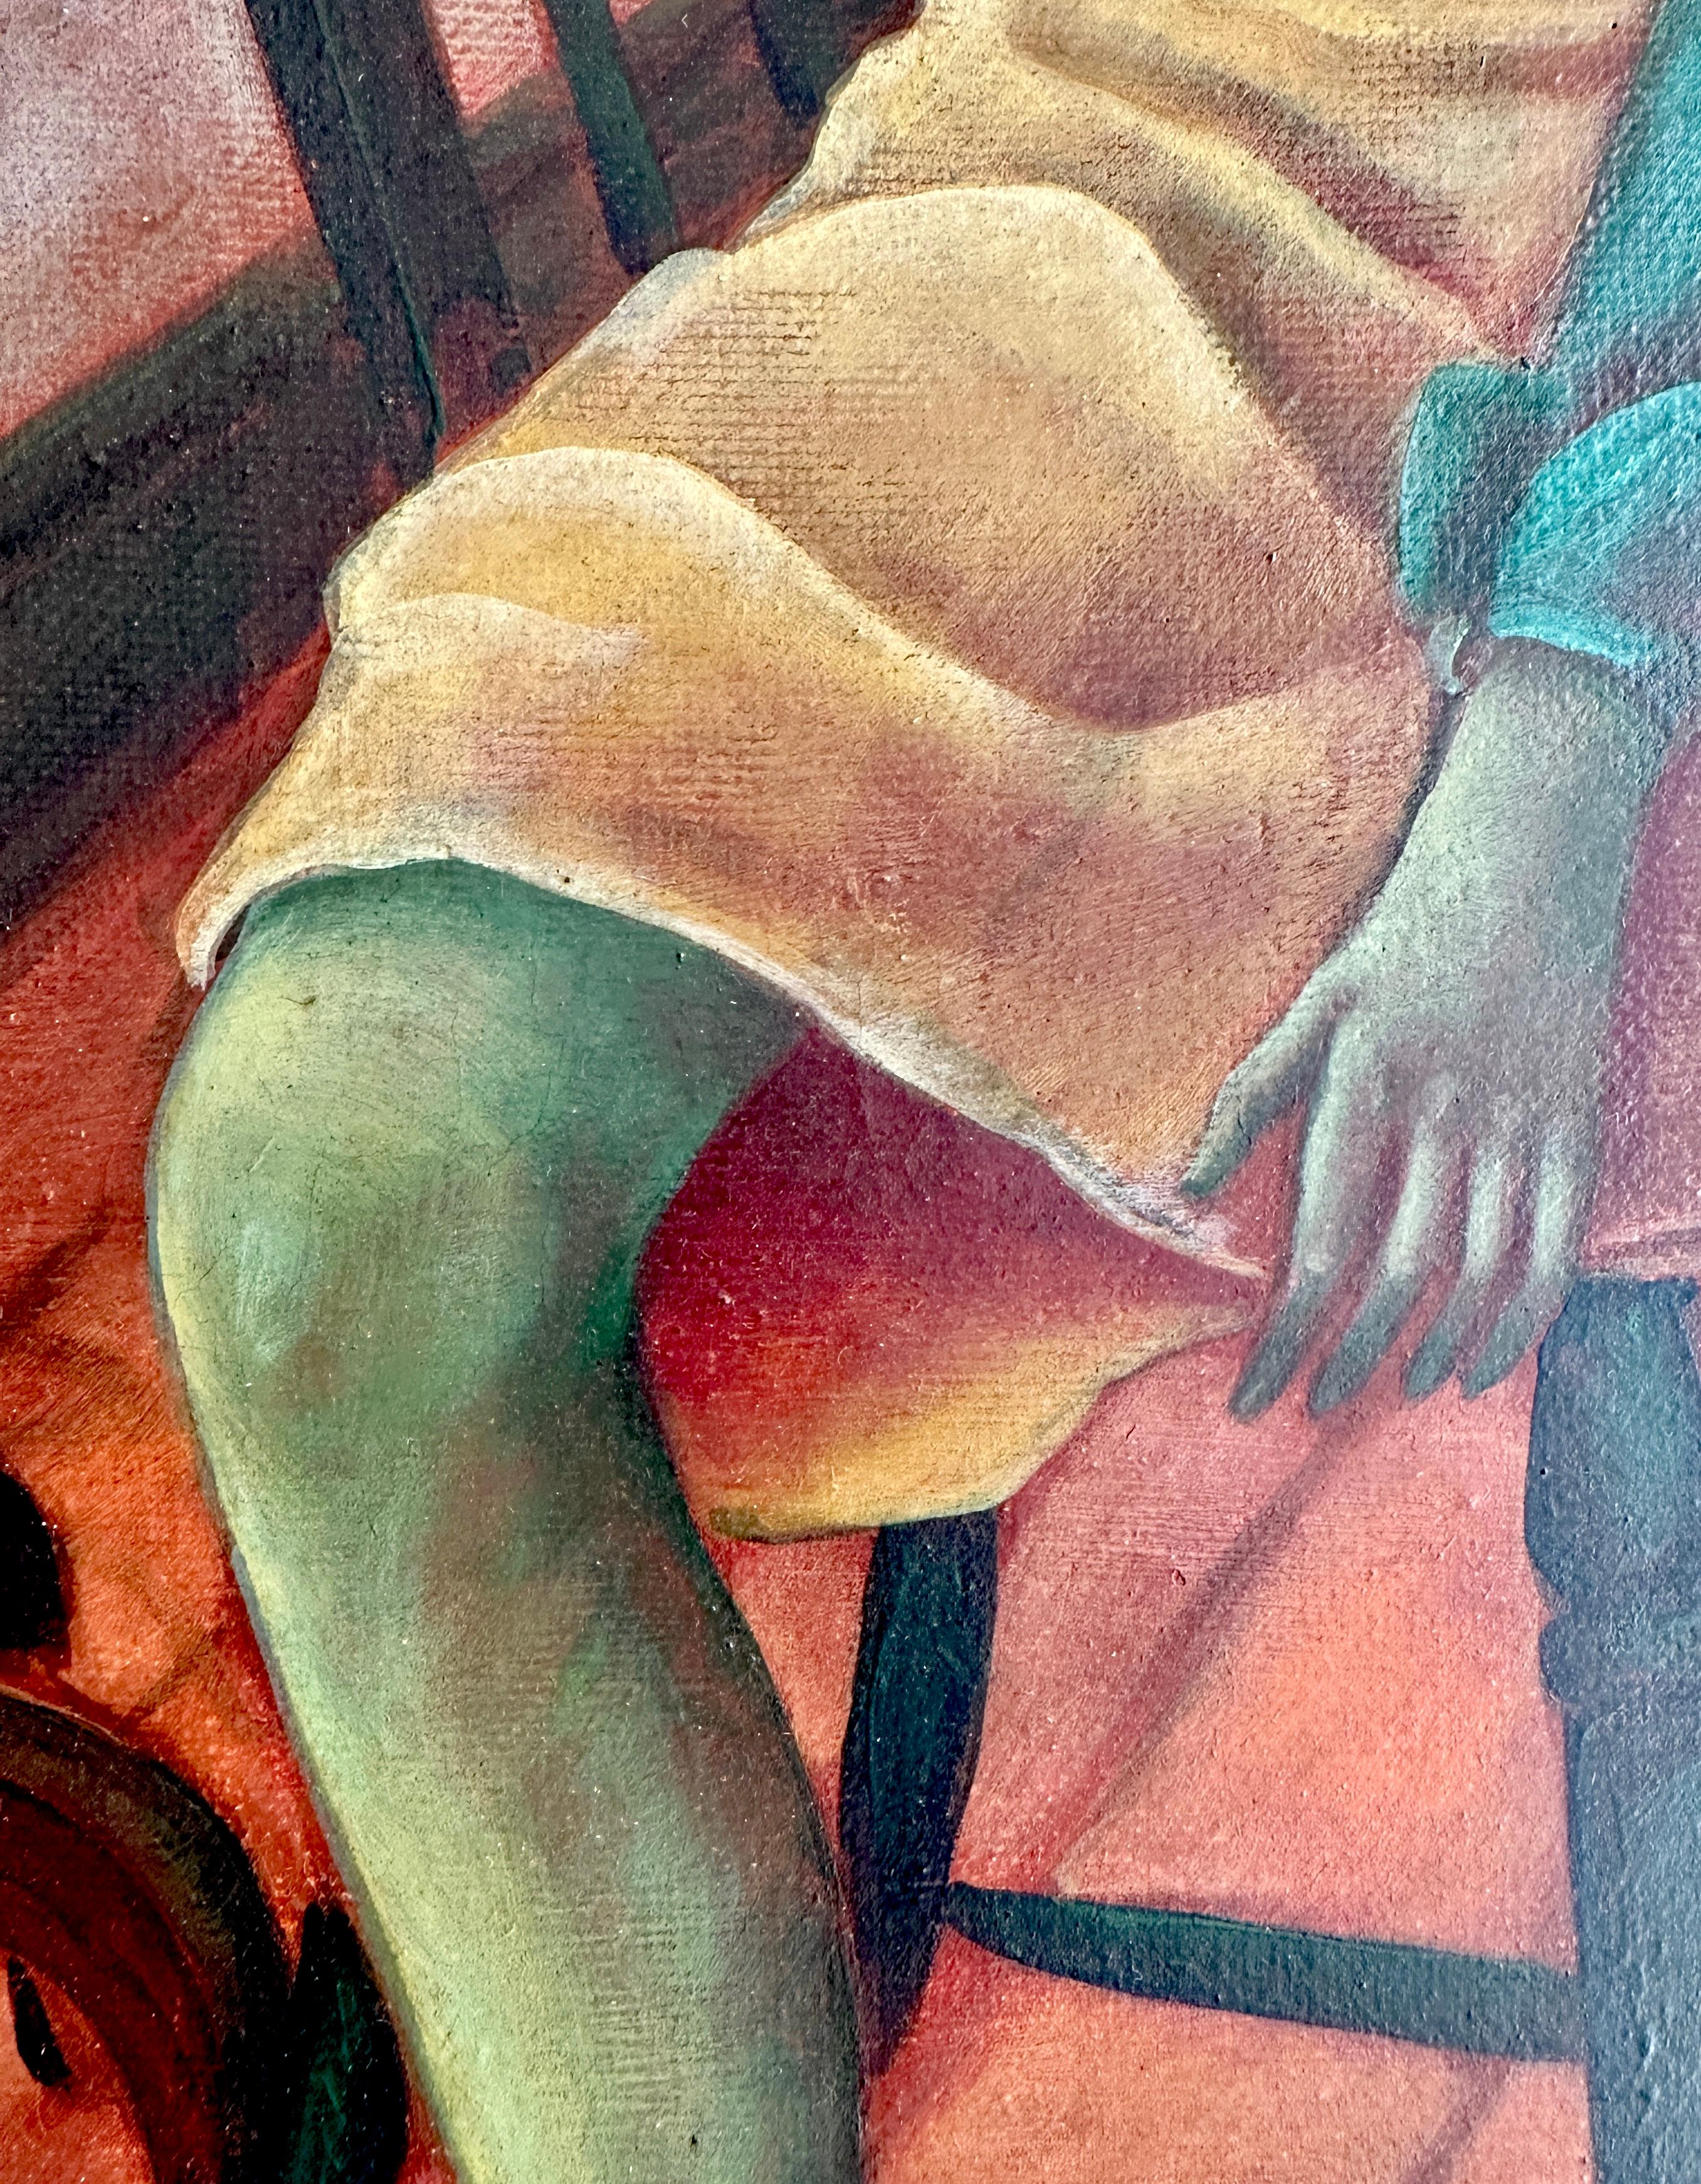 Jeune fille dans un intérieur - Peinture à l'huile de Julio De Diego 3